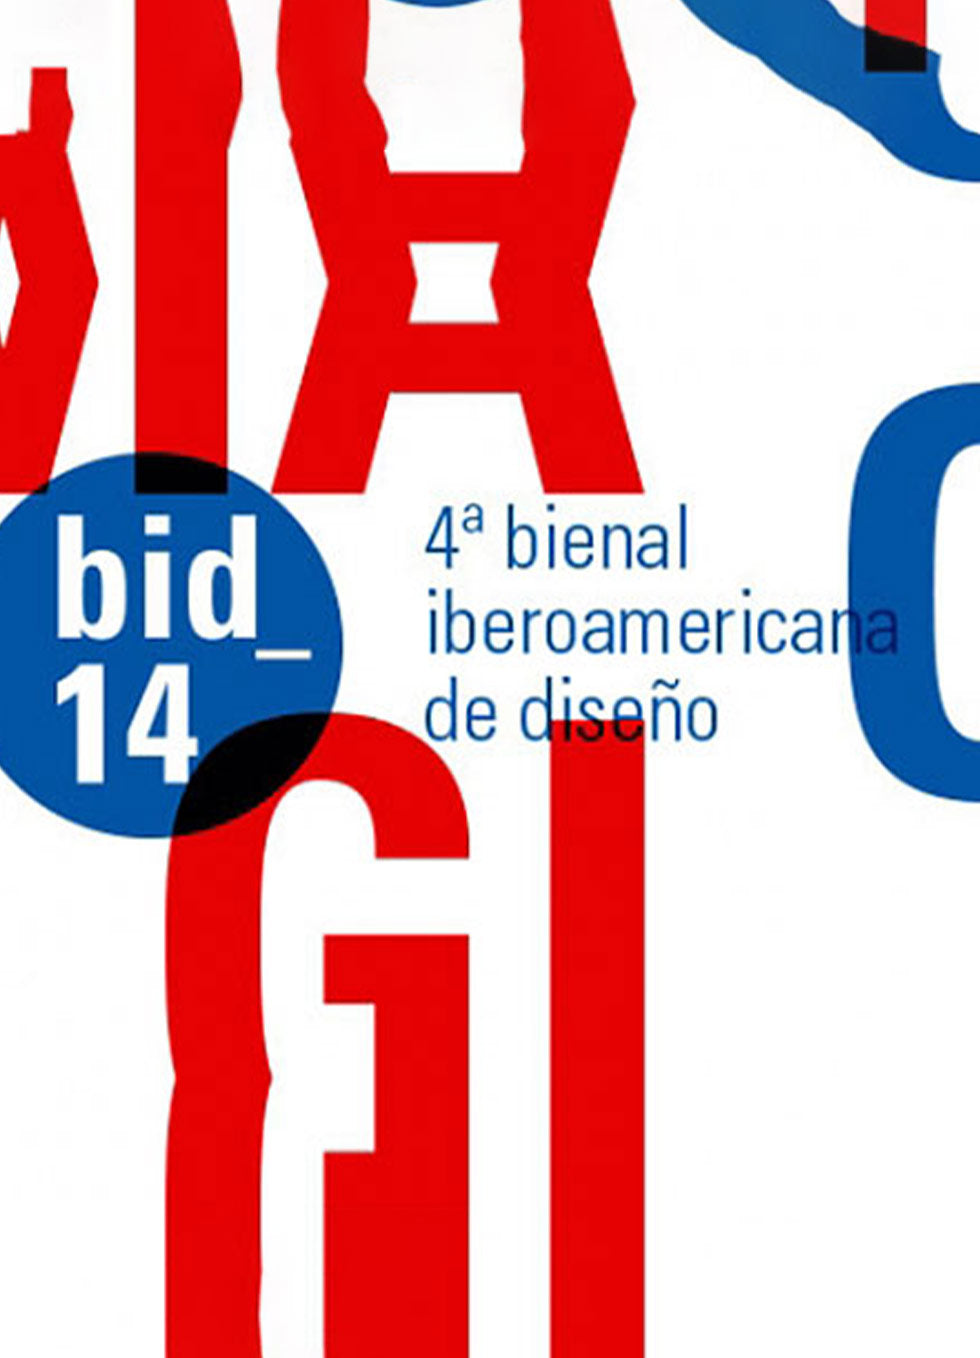 Iberoamerican Biennial of Design - 2014/15